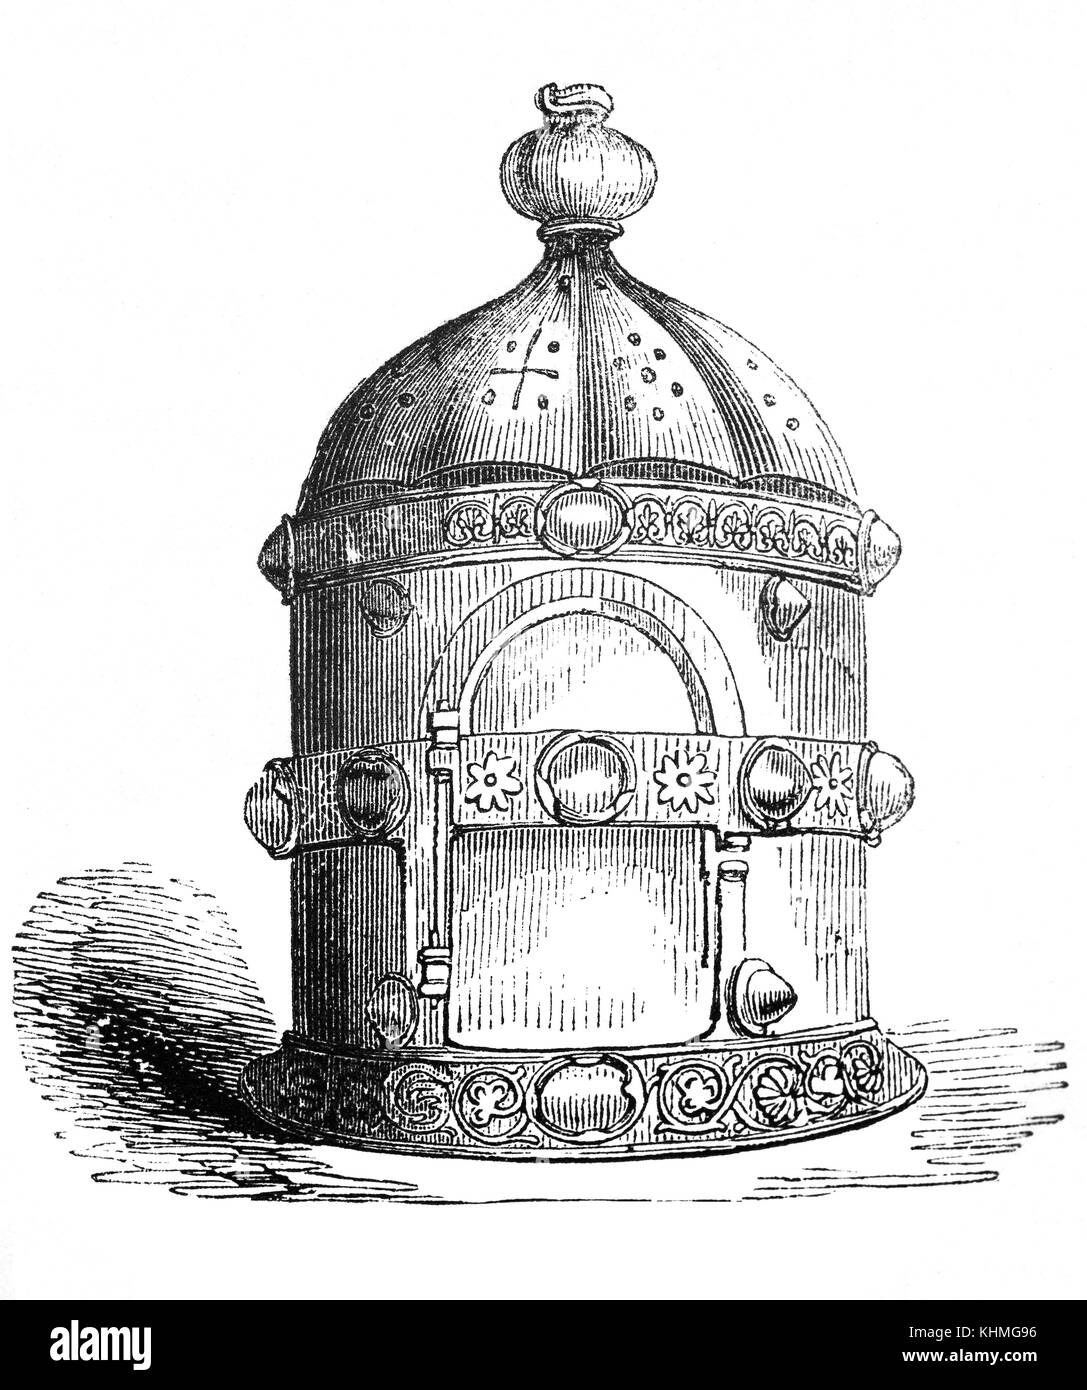 Une lanterne à bougie lanthorn primitive faite de corne et bois. Elle a été faite par les Anglo-Saxons au cours du temps d'Alfred le Grand (849 - 899) qui était roi de Wessex de 871 à 899. Banque D'Images